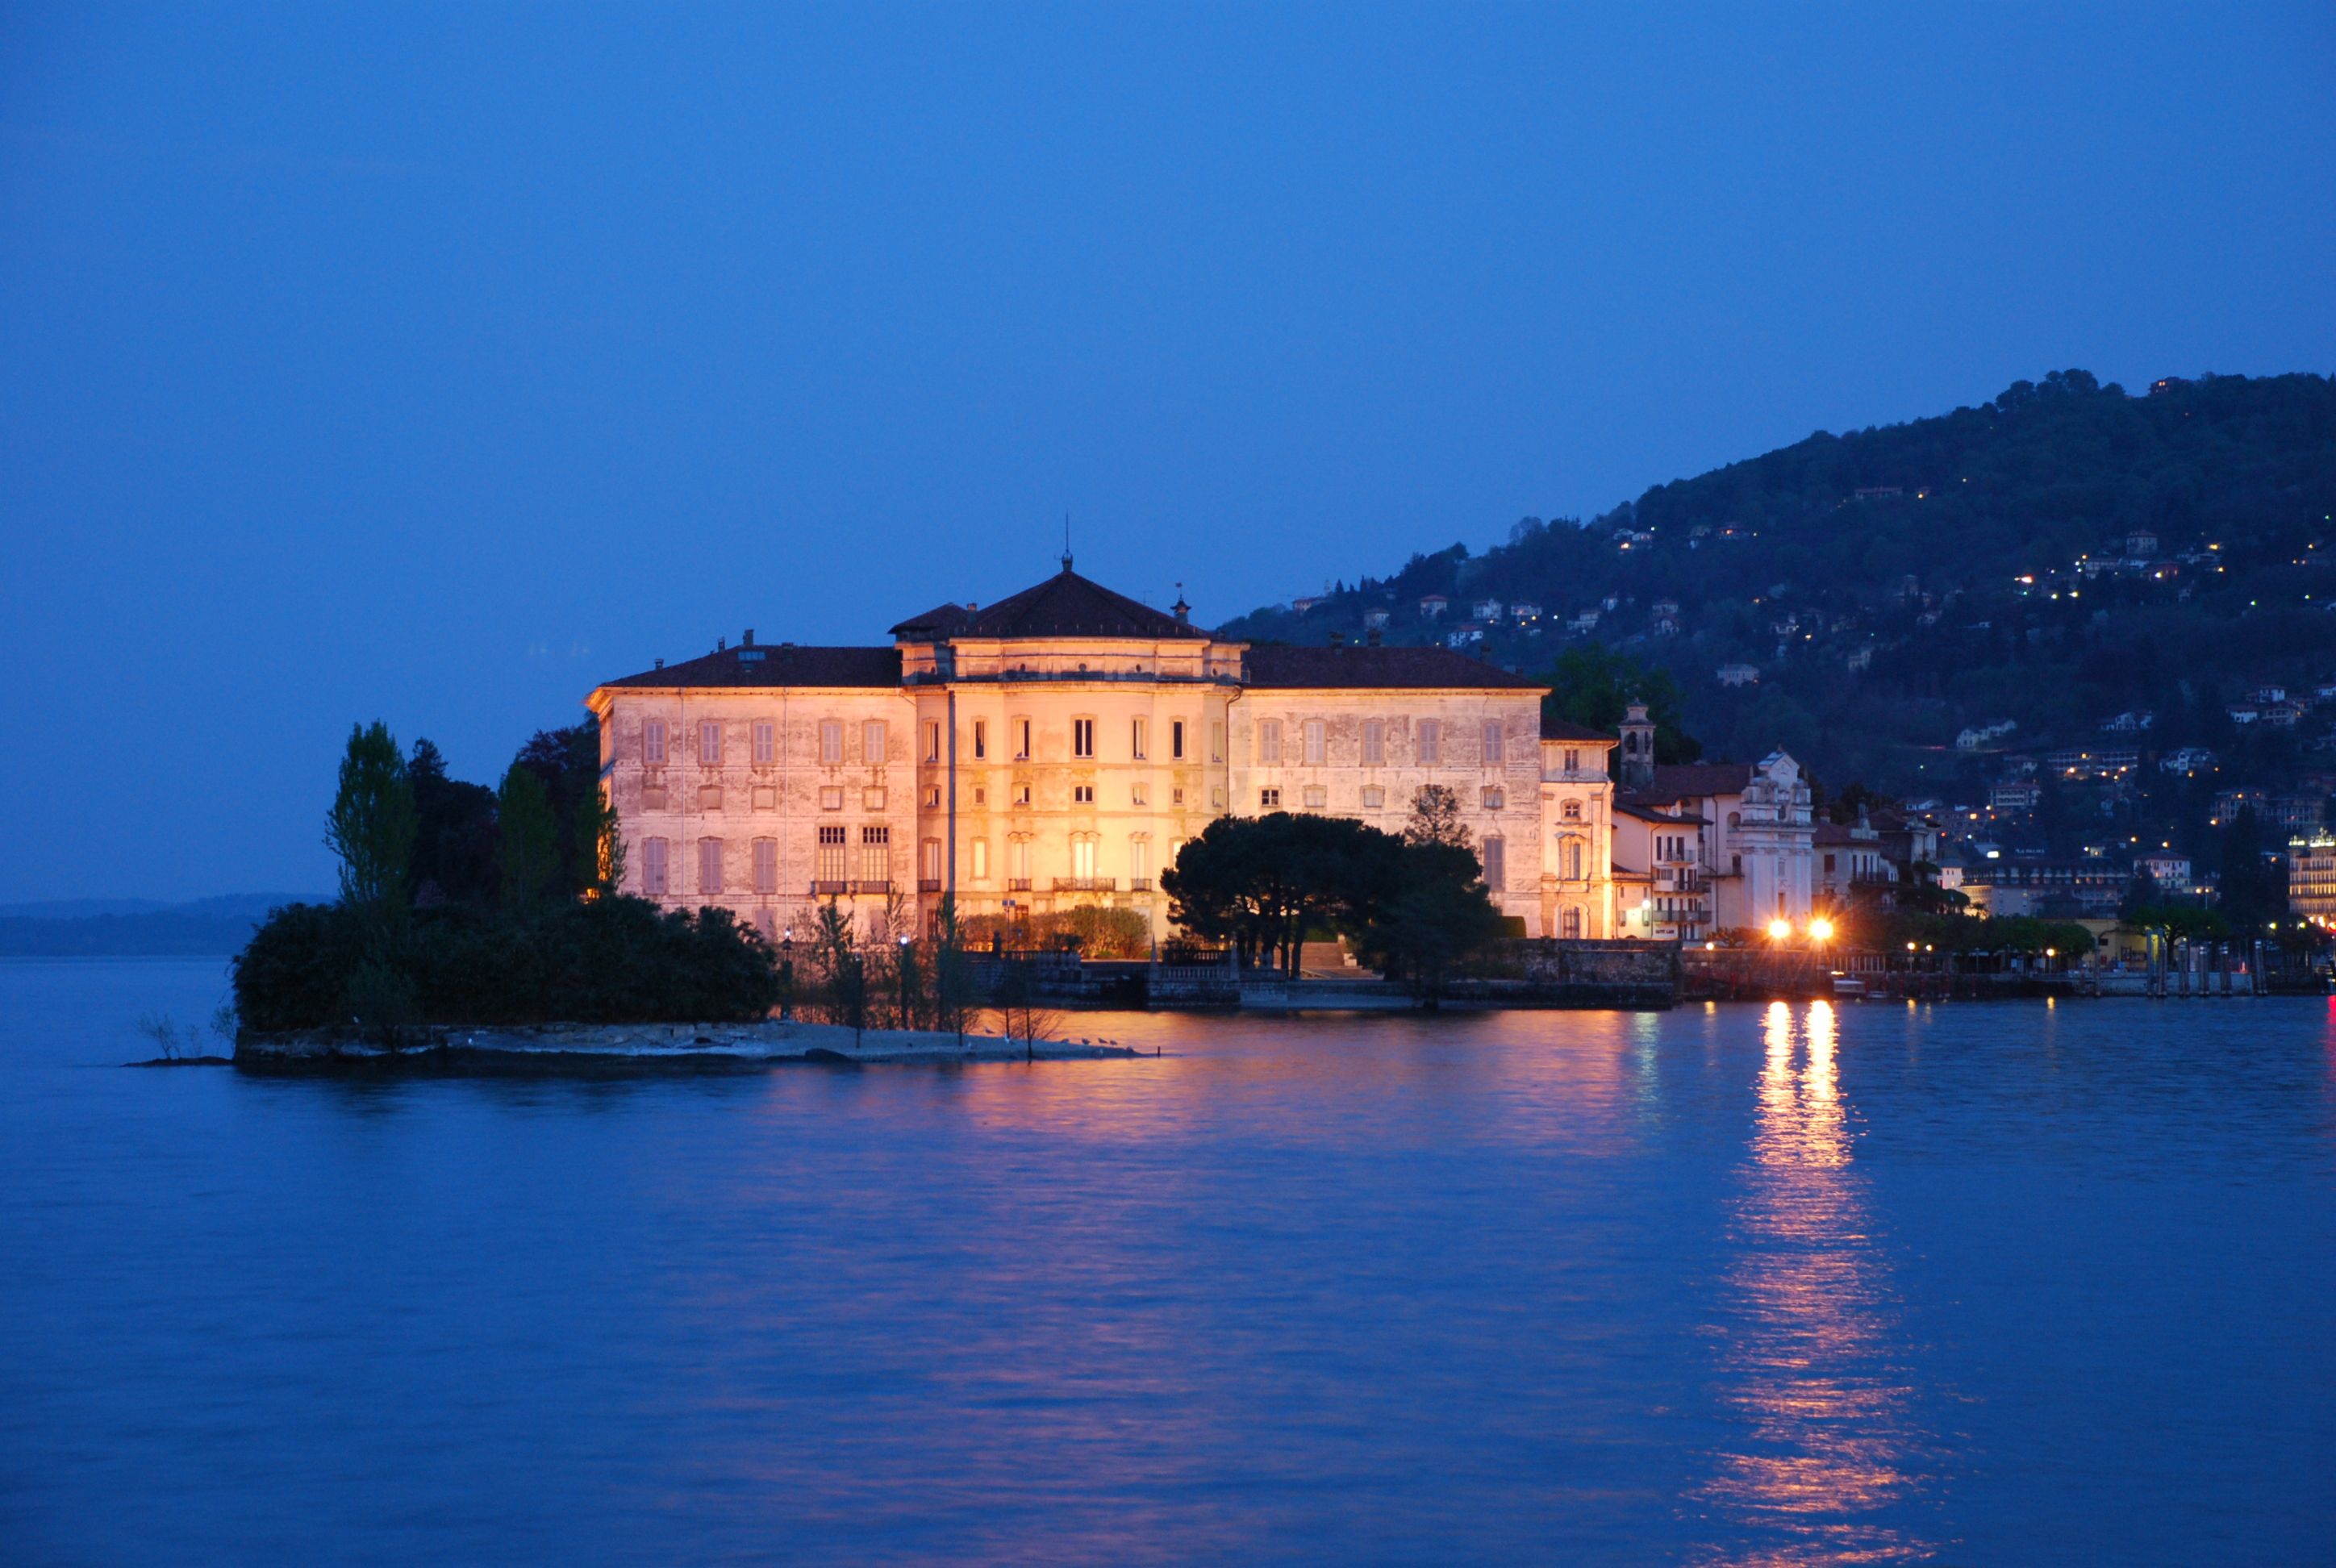 Lake Maggiore by night